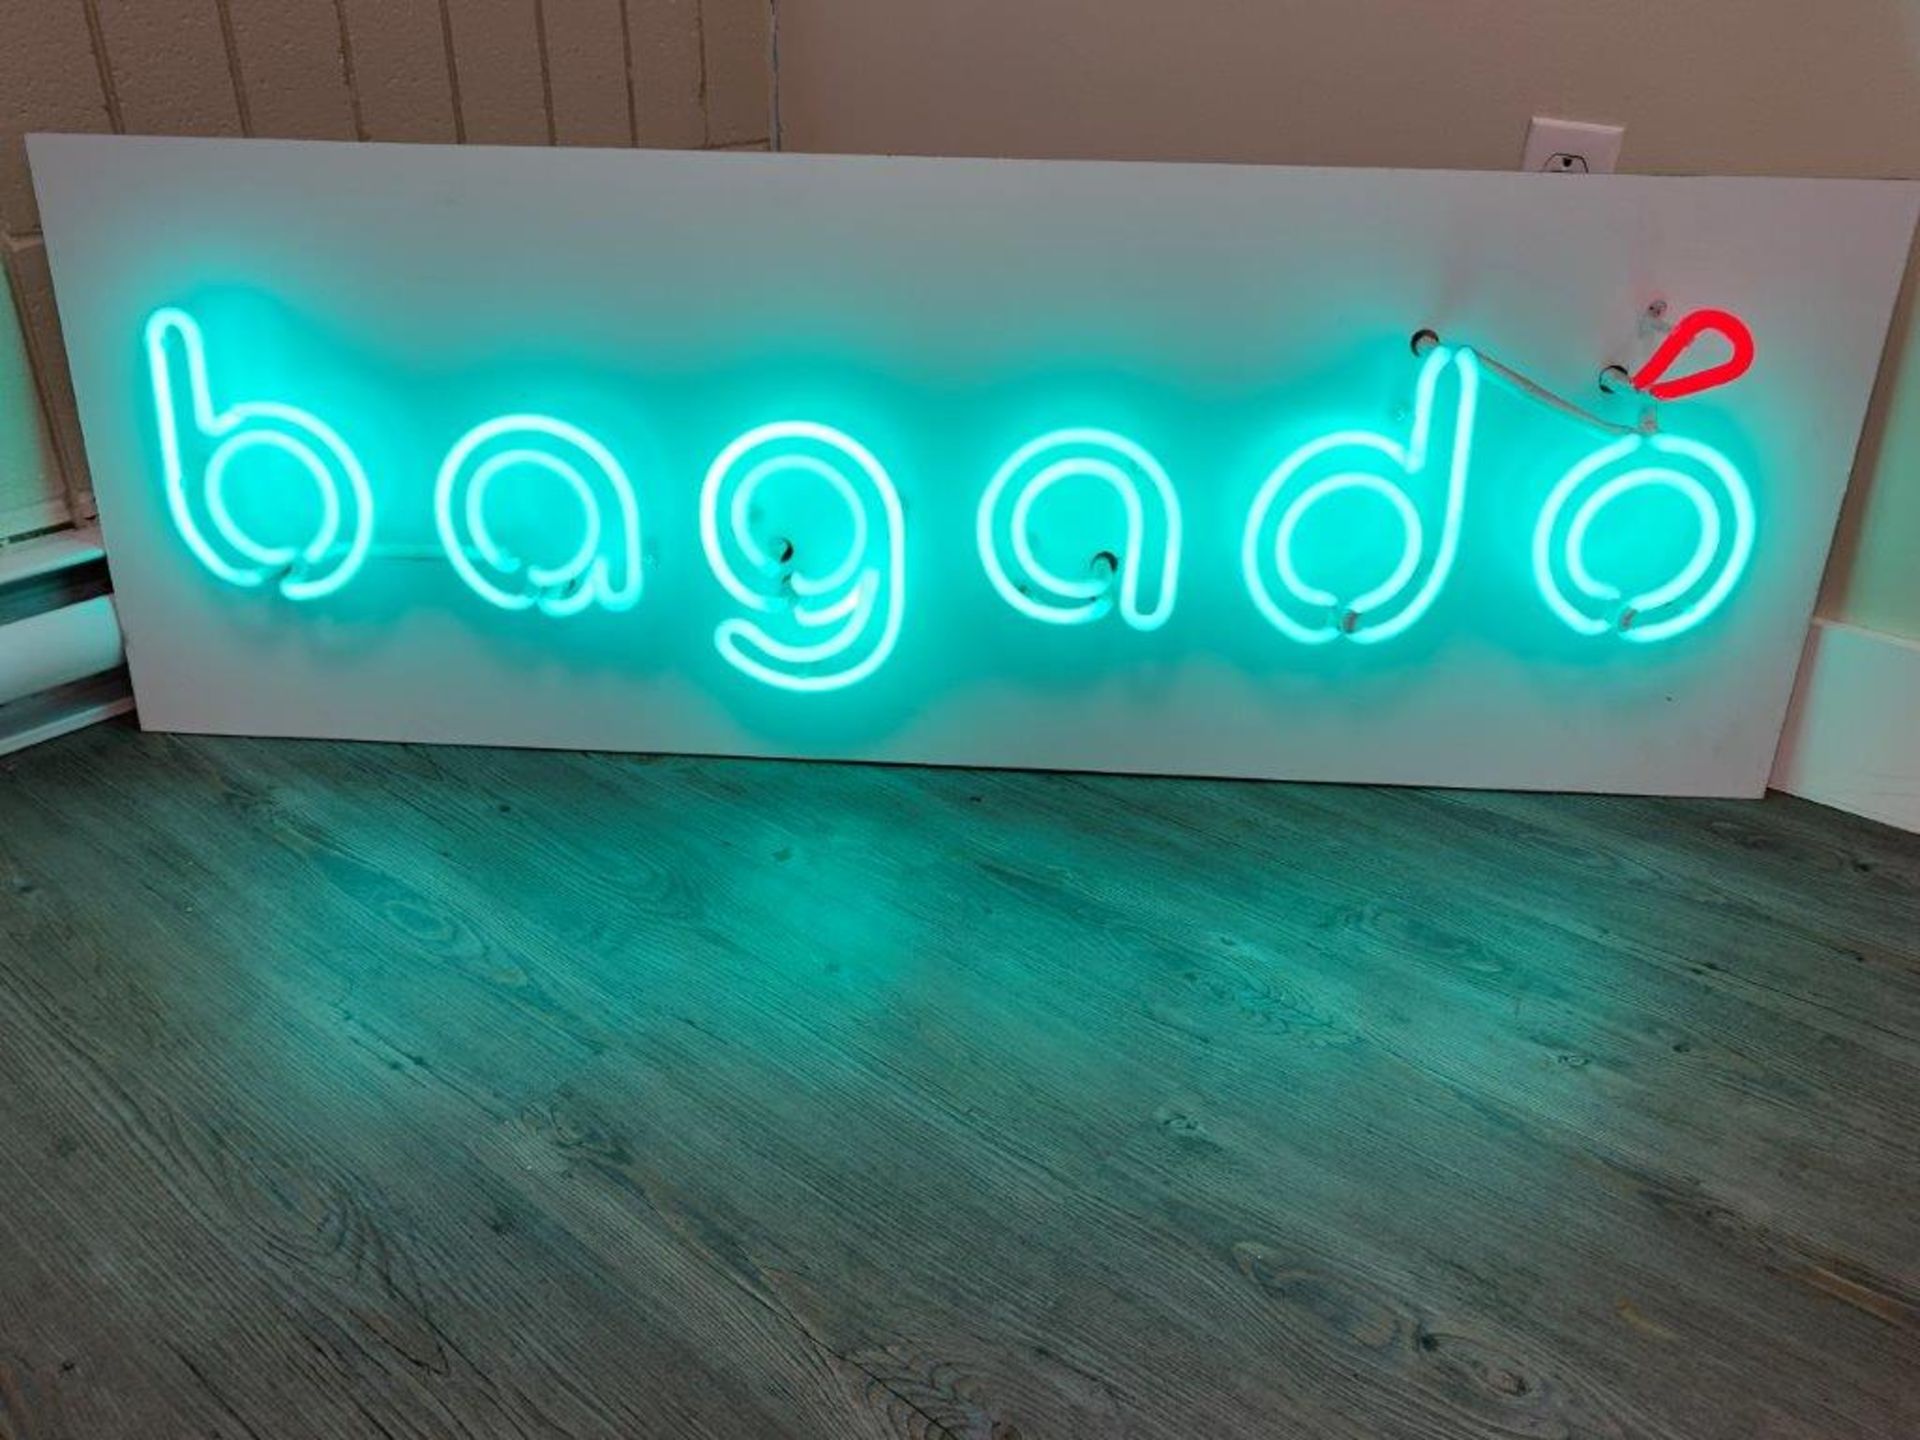 Enseigne neon BAGADO